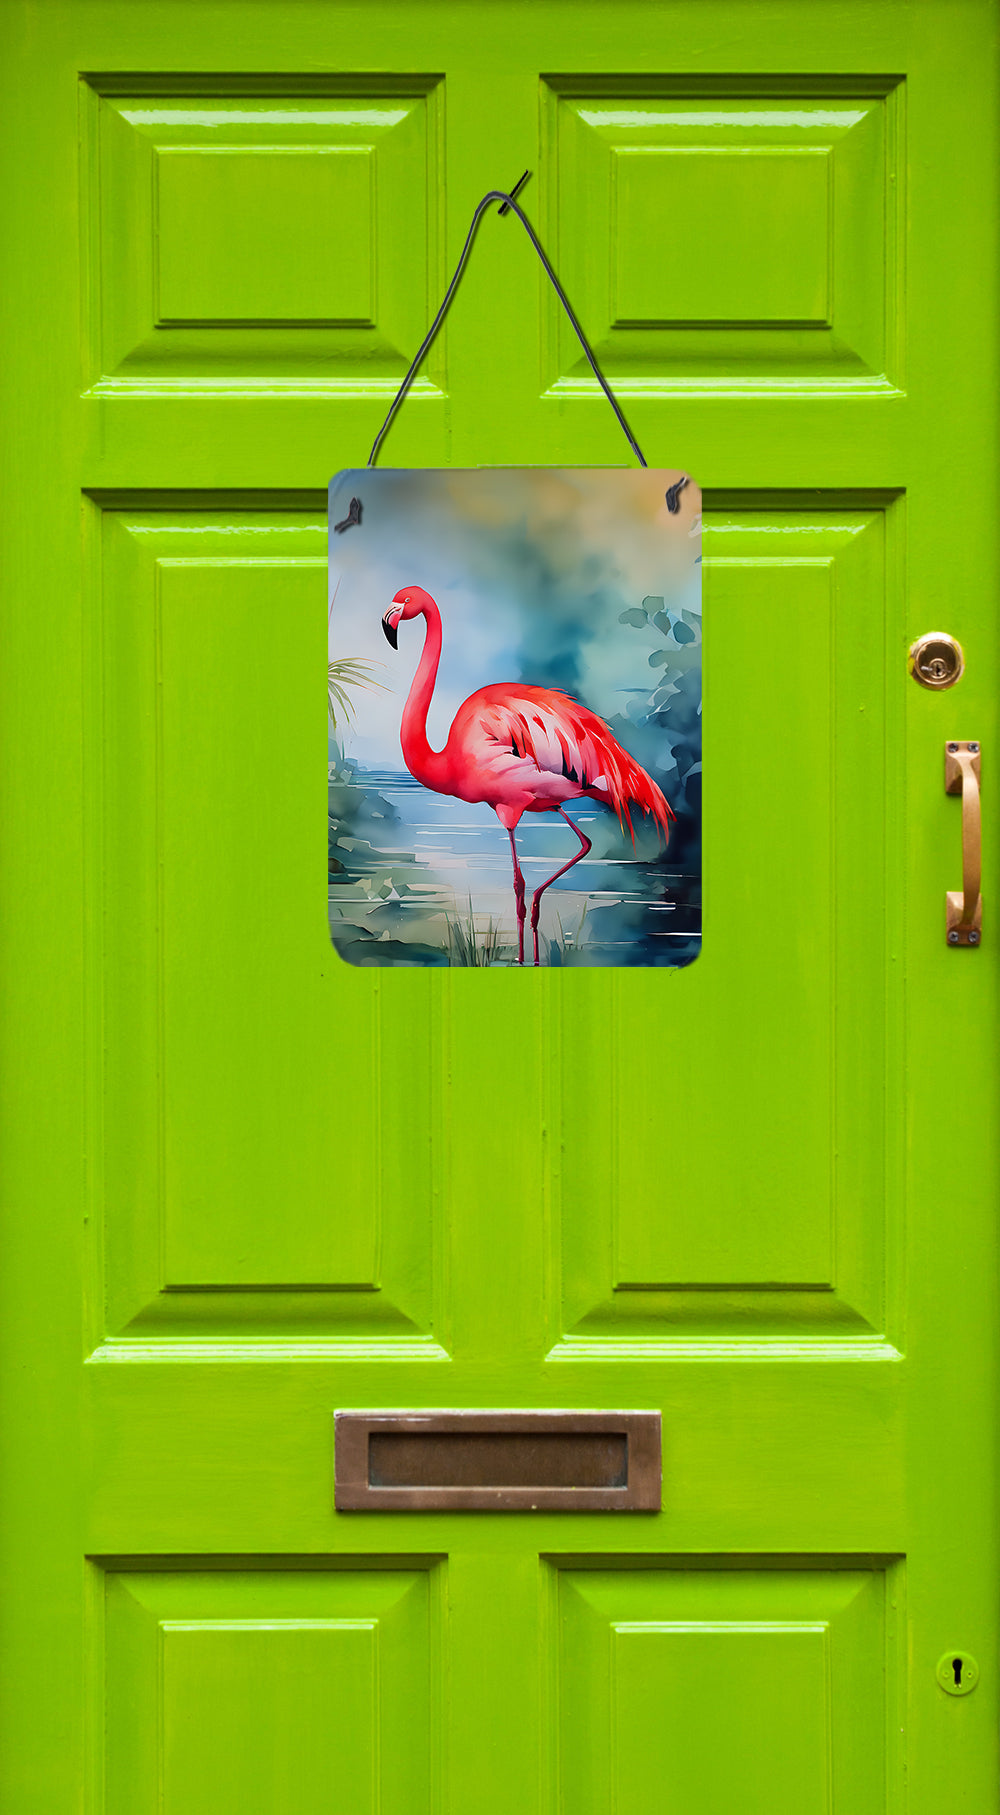 Buy this Flamingo Wall or Door Hanging Prints